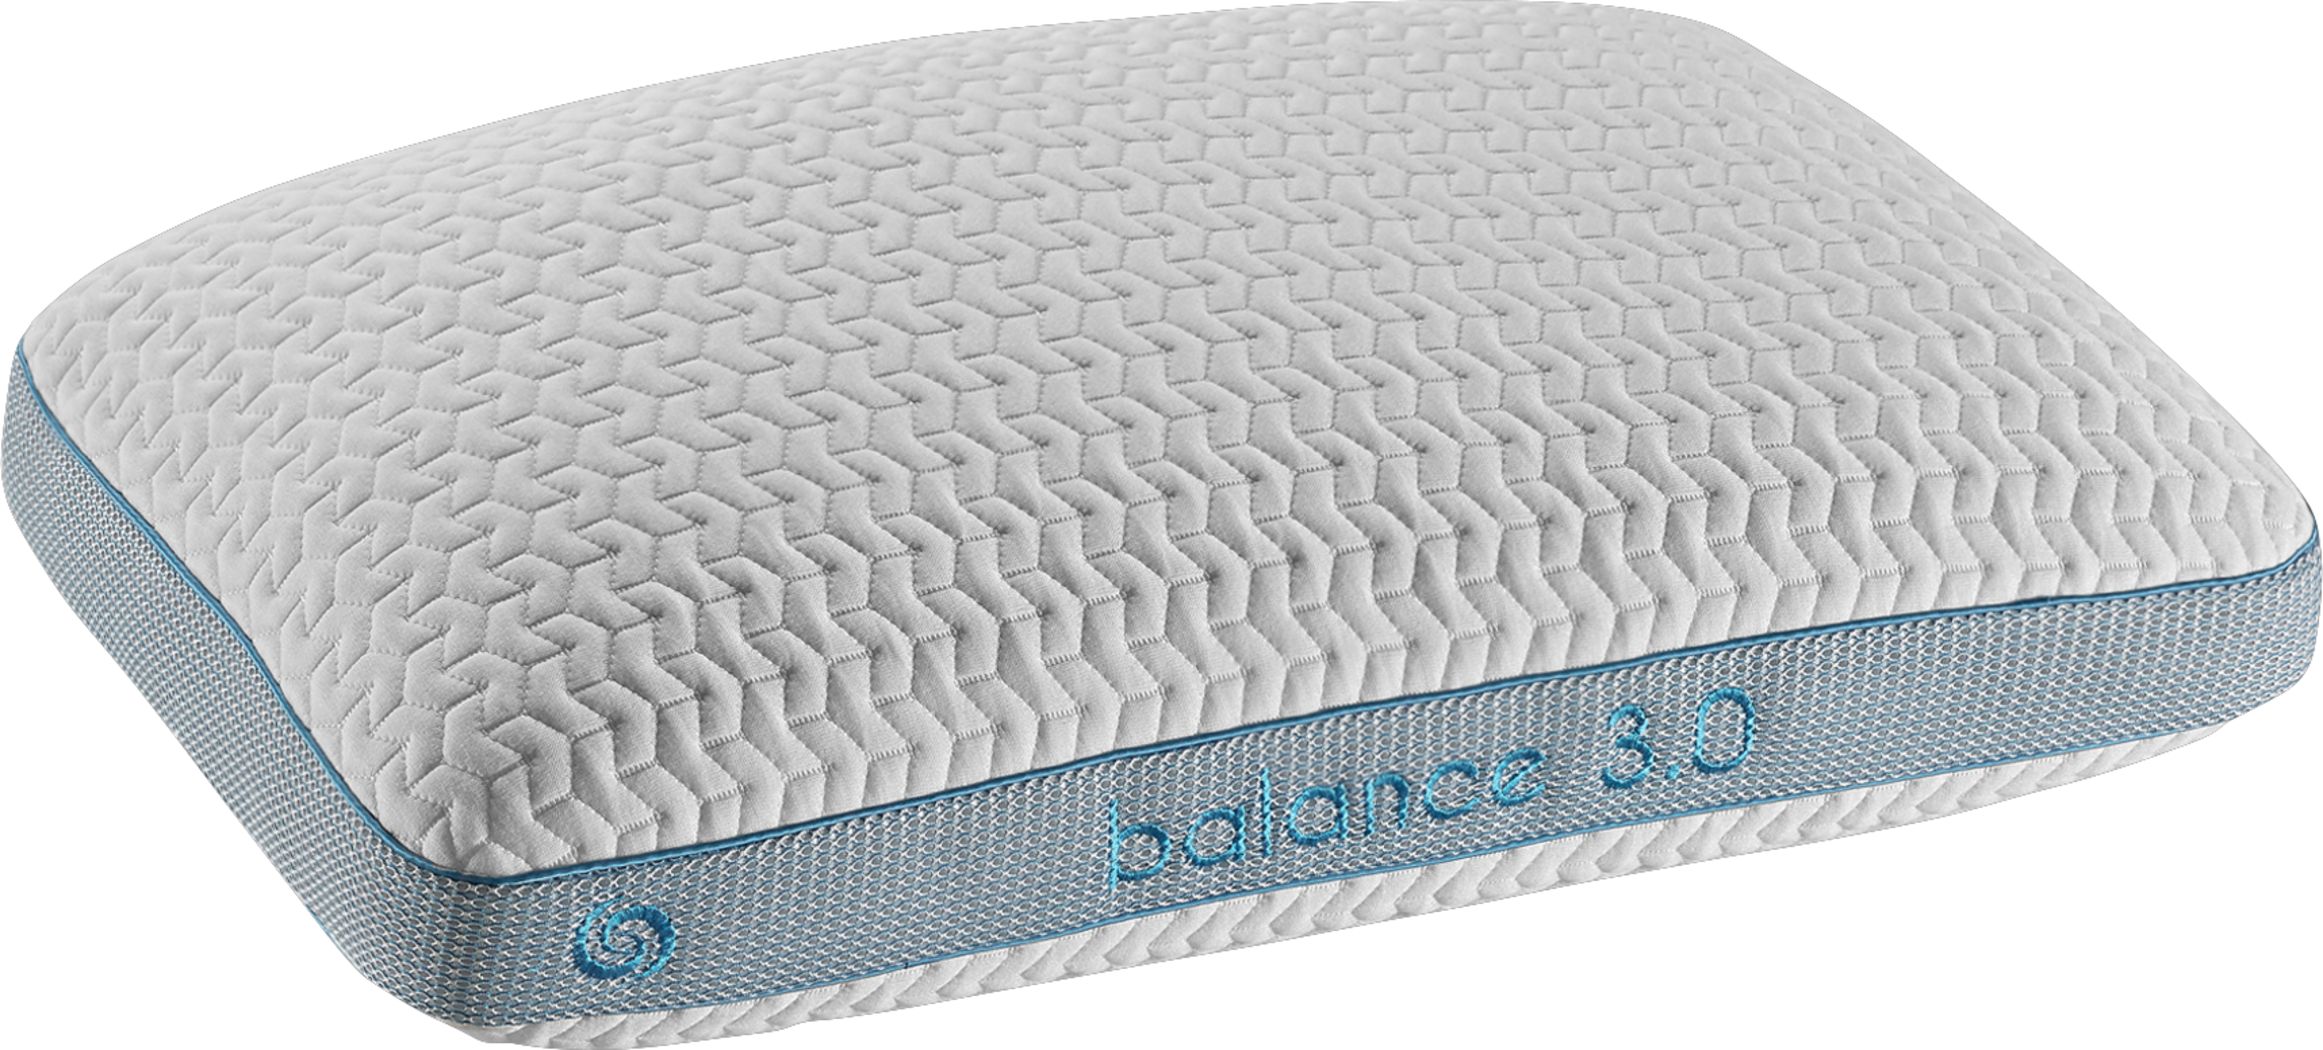 bedgear balance boost mattress topper